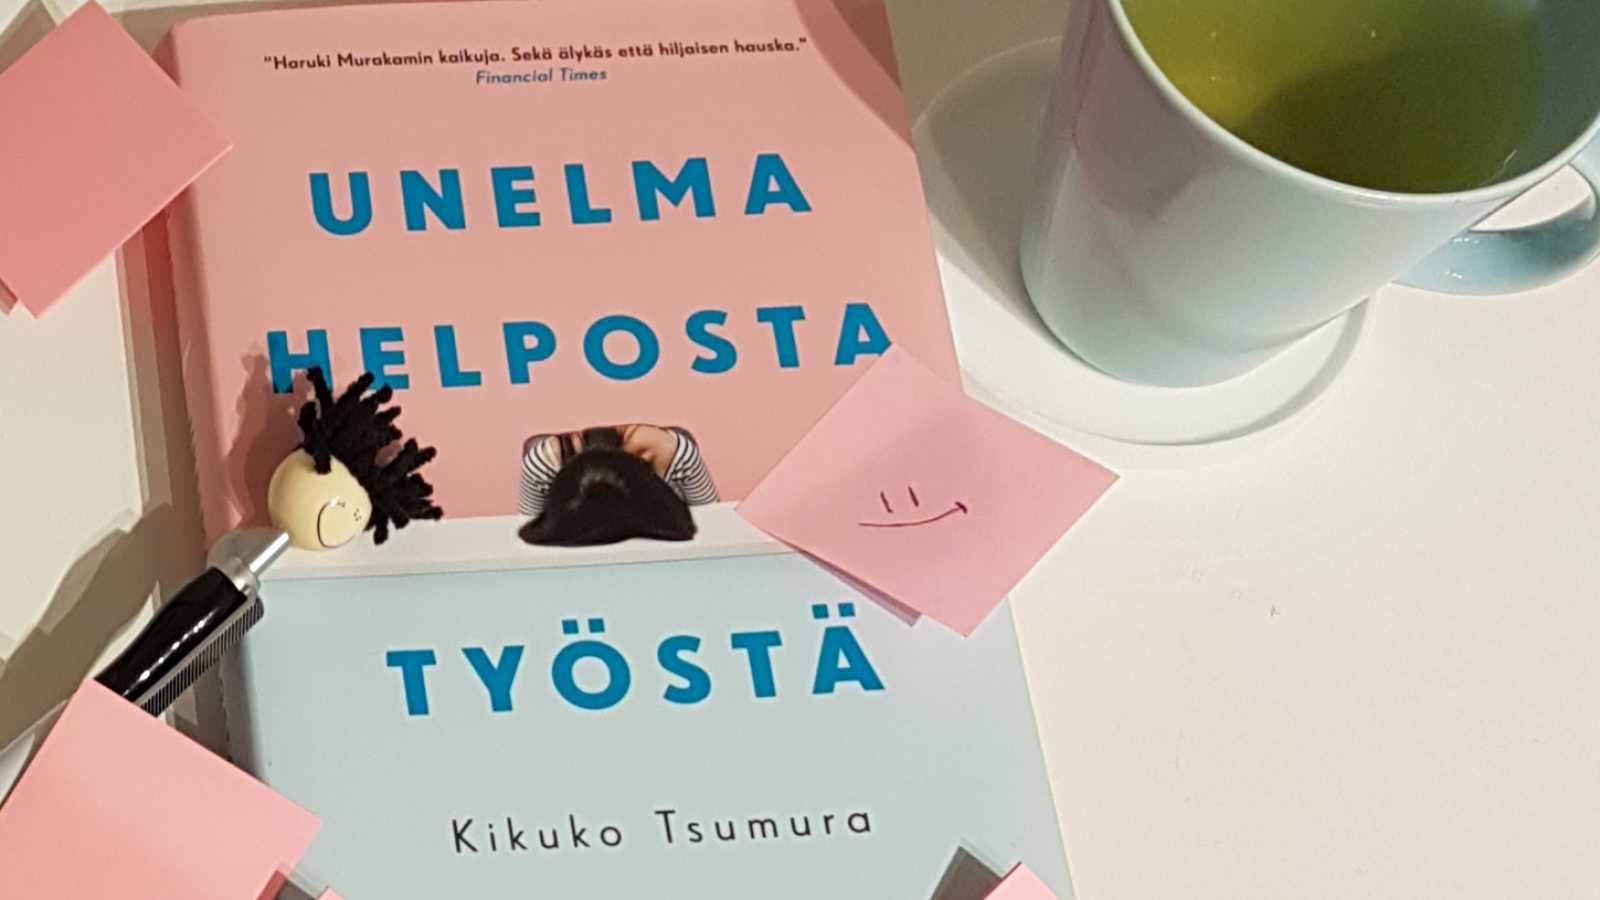 Kirjavinkkaus: Kikuko Tsumuran Unelma helposta työstä